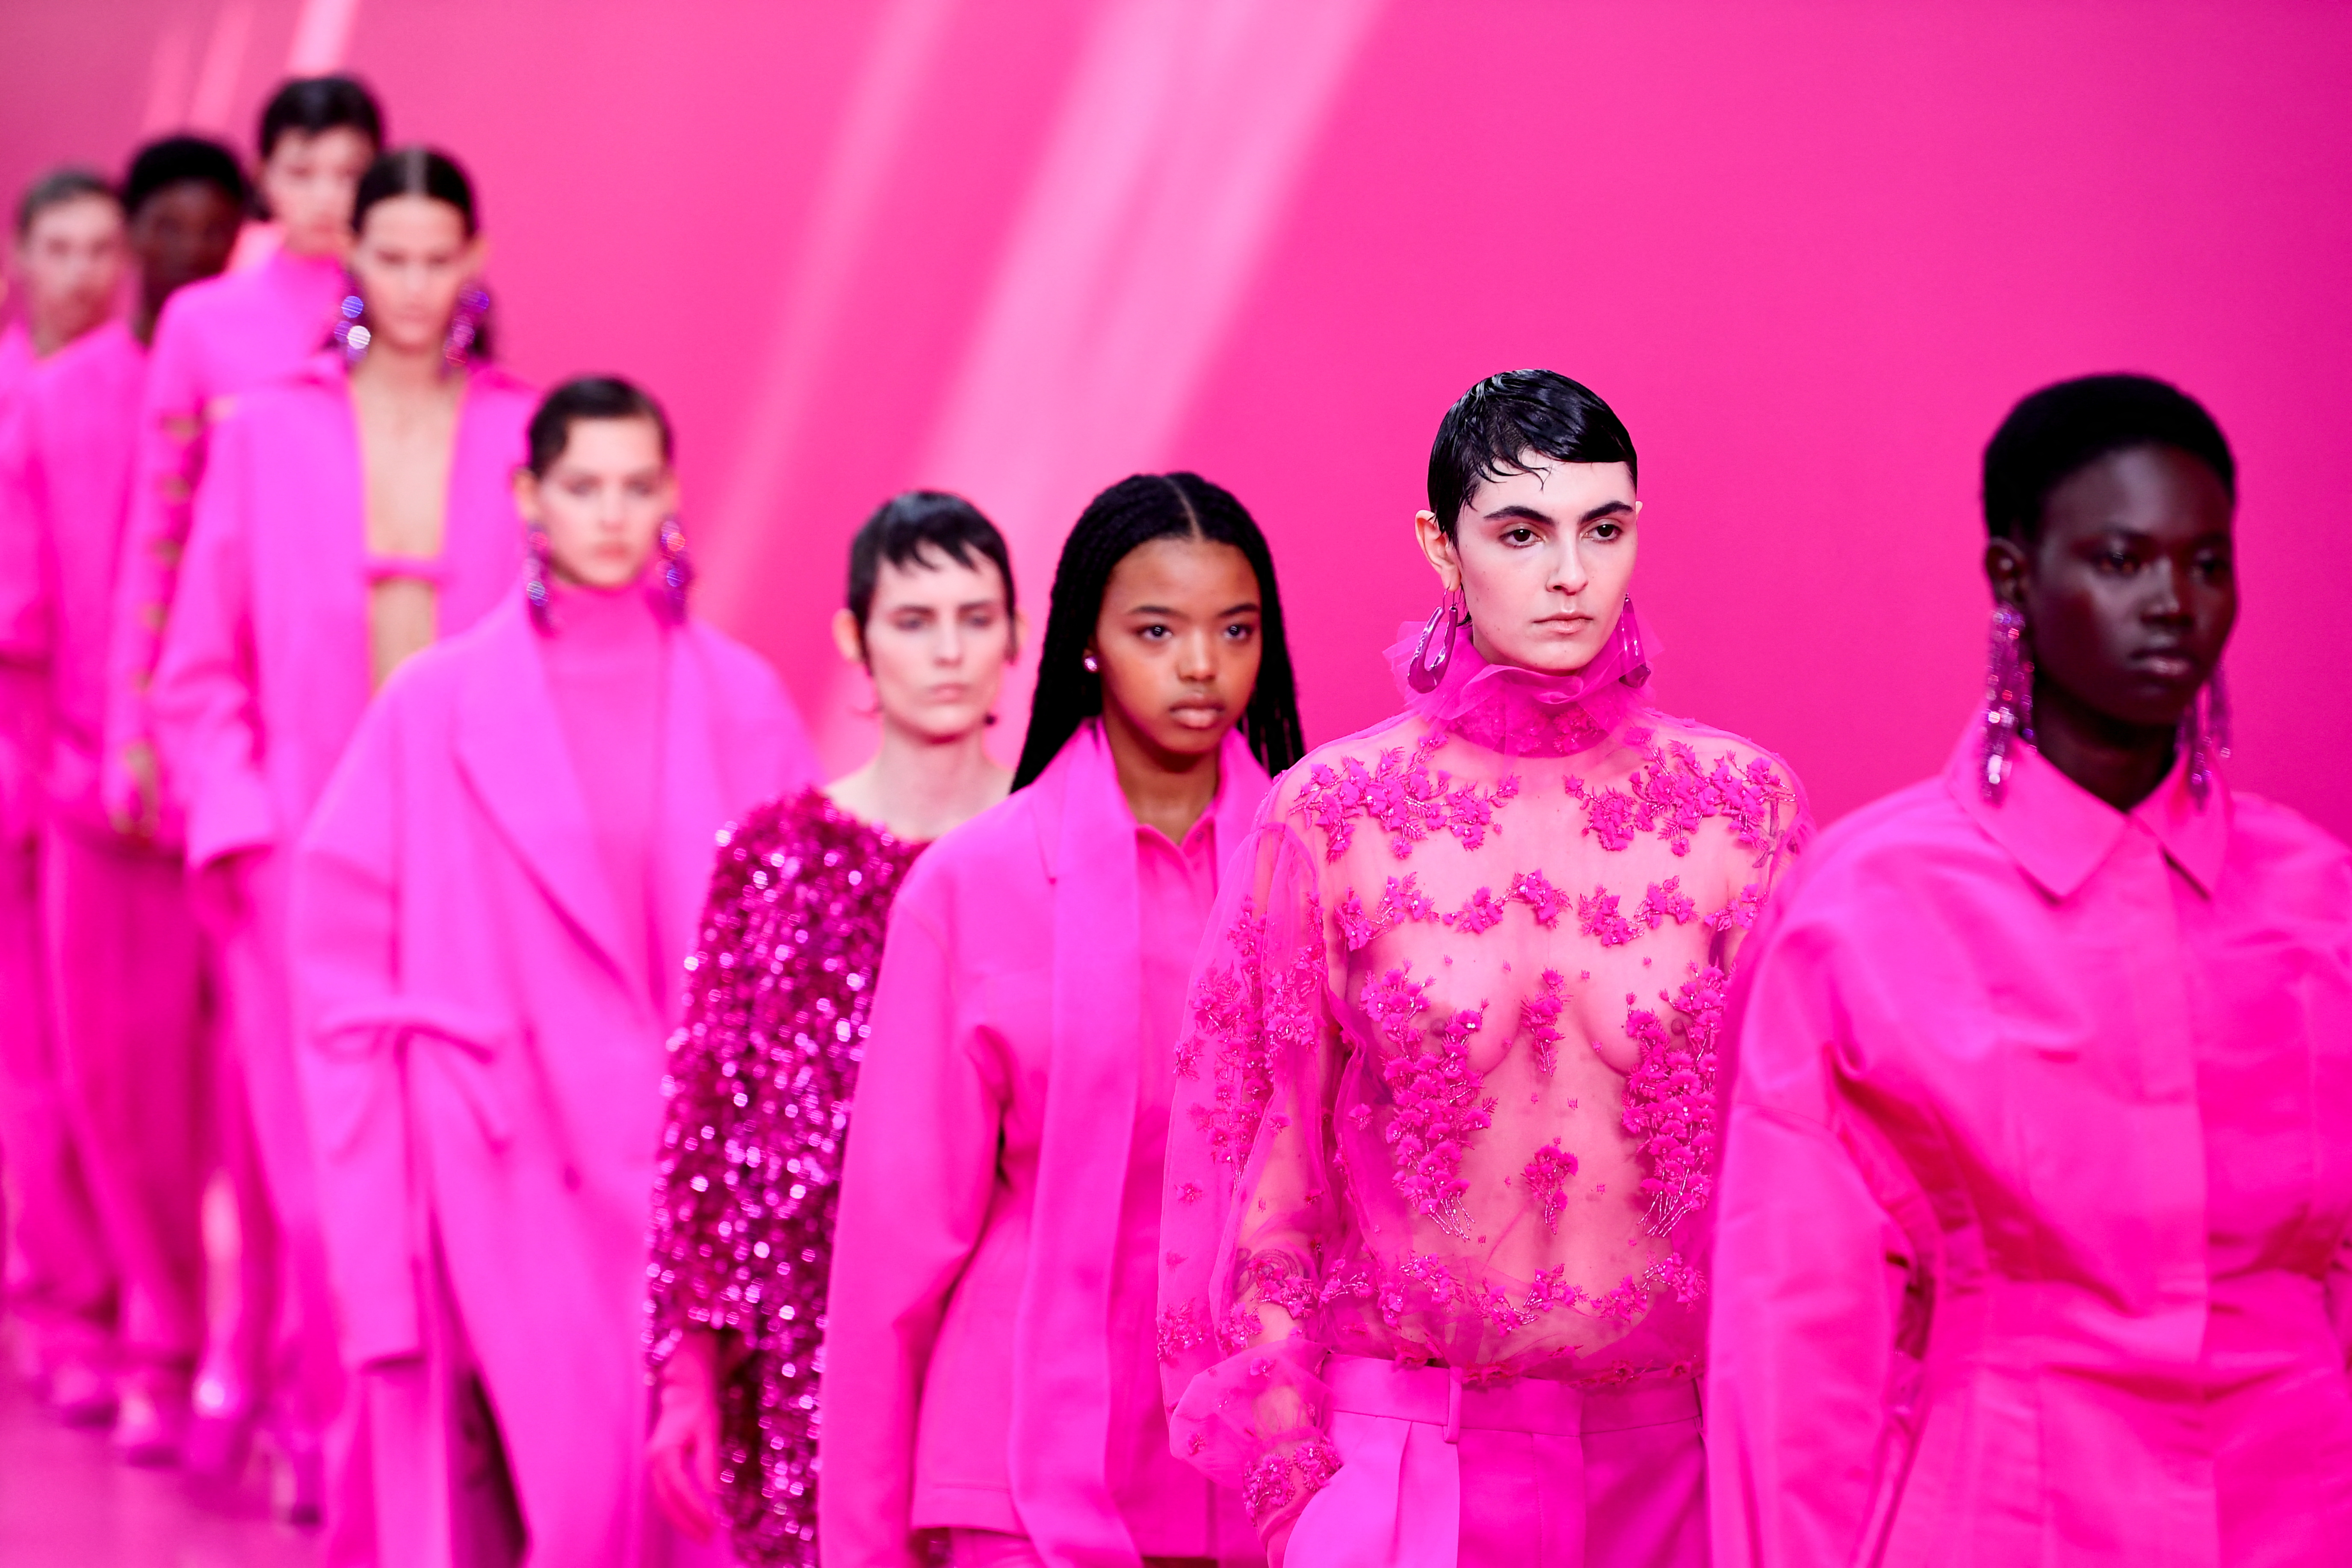 La visión creativa de la casa de moda dictó que la próxima temporada tendrá que ver con el rosa chillón (REUTERS)